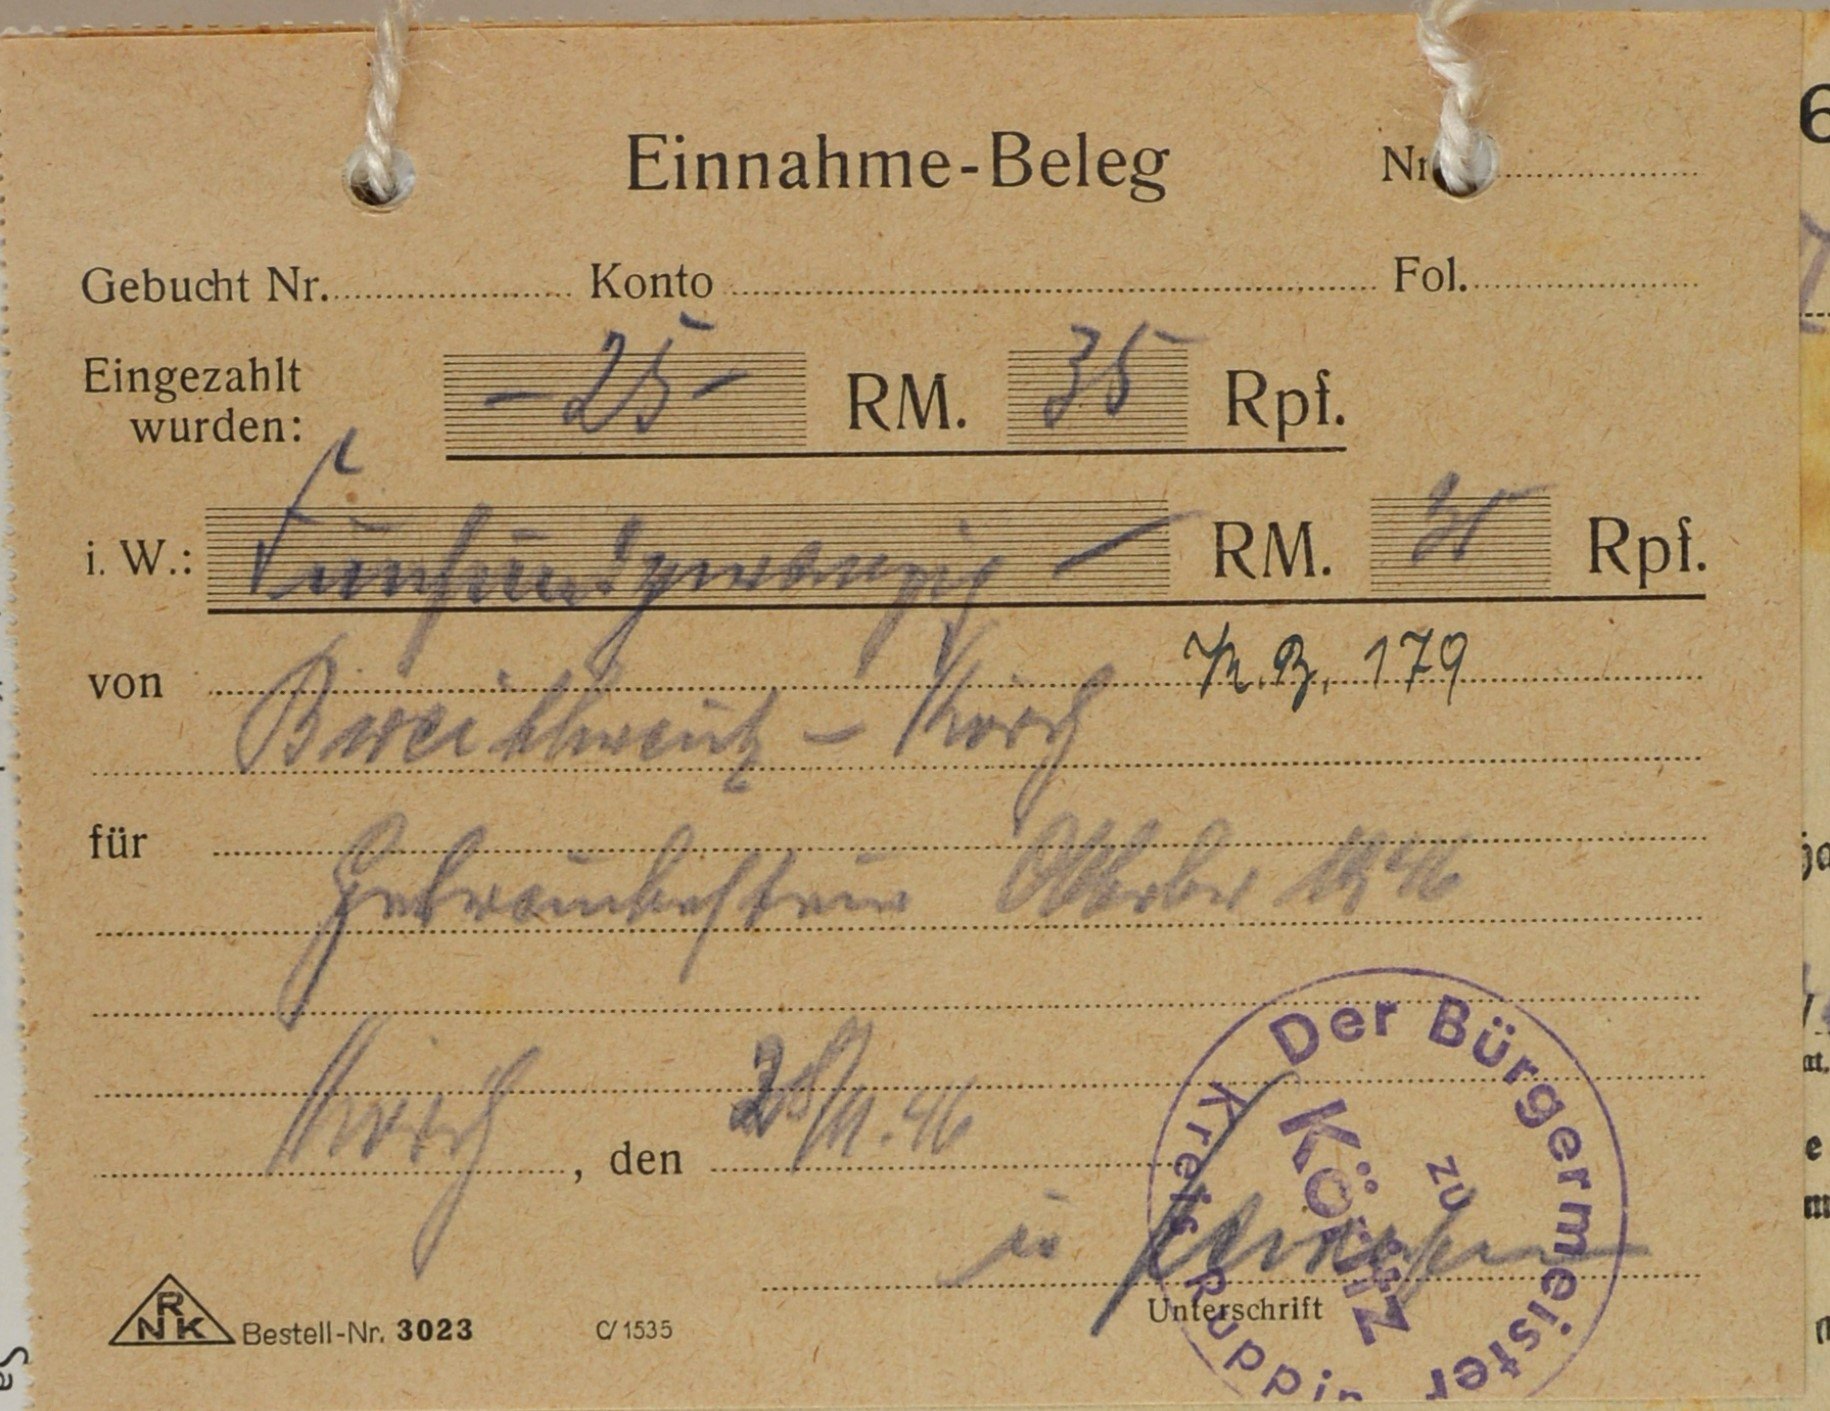 Einnahmebeleg von dem Bürgermeisteramt zu Köritz für Wilhelm Breitkreuz (DDR Geschichtsmuseum im Dokumentationszentrum Perleberg CC BY-SA)